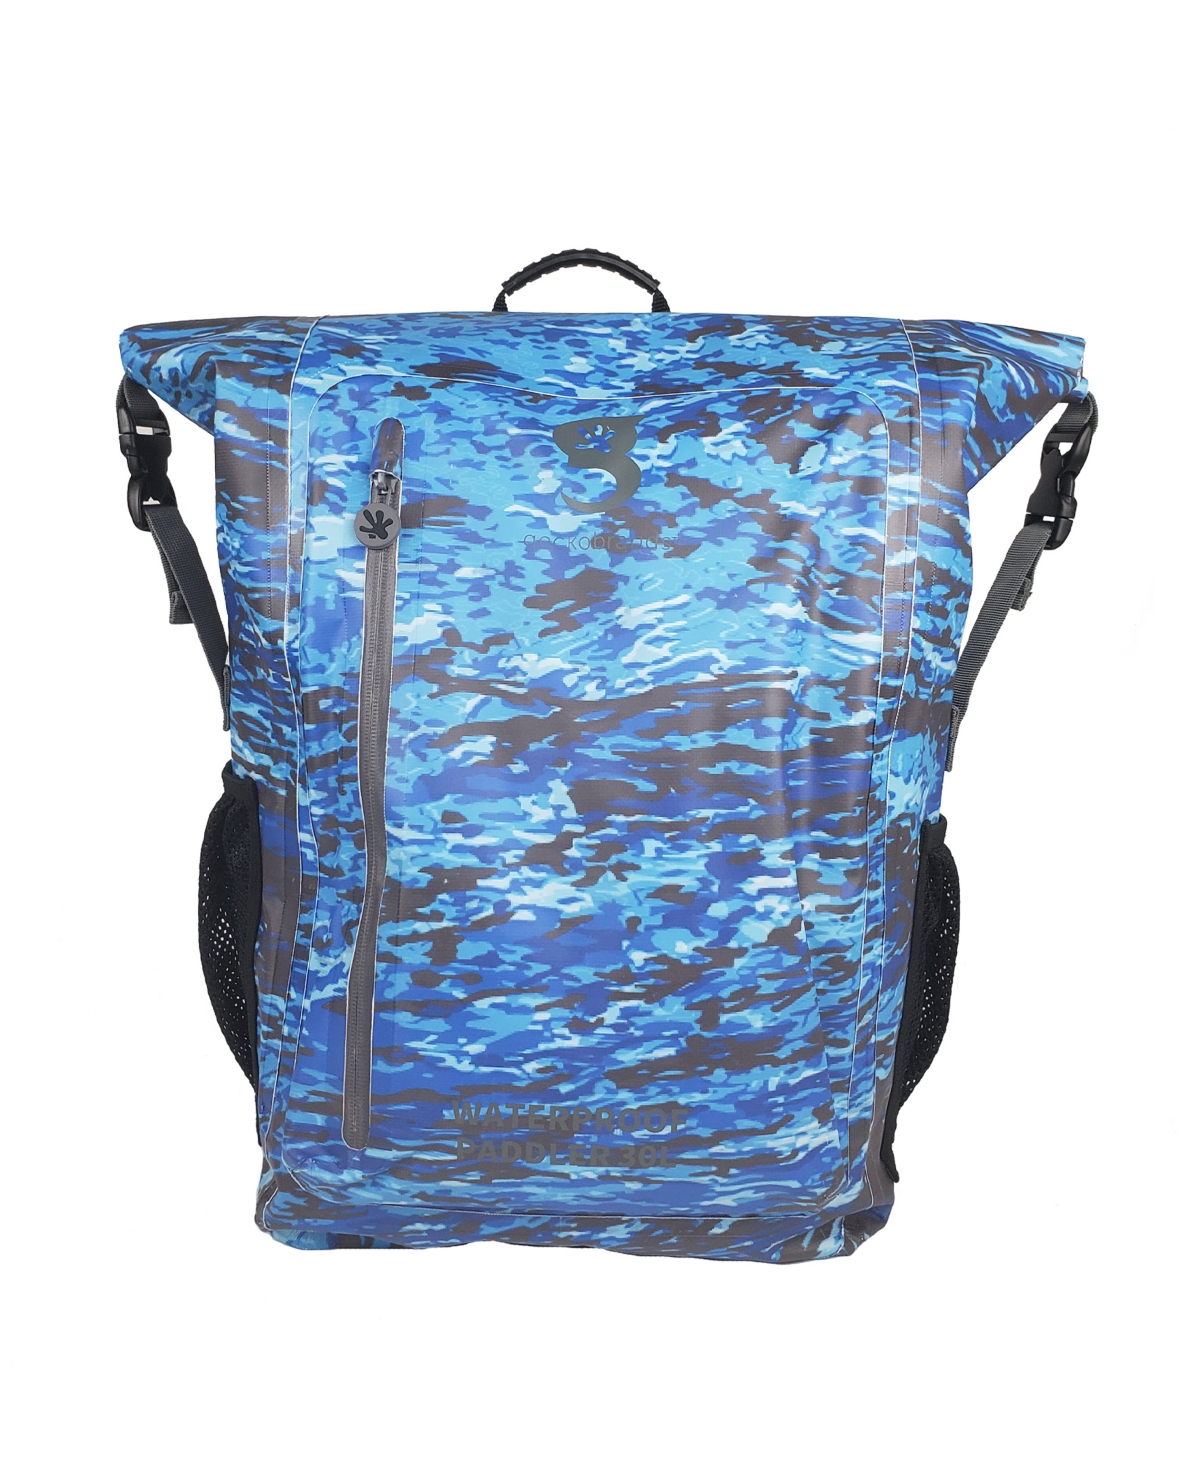 Geckobrands Paddler 30 Liters Water-resistant Backpack In Ocean Geckoflage